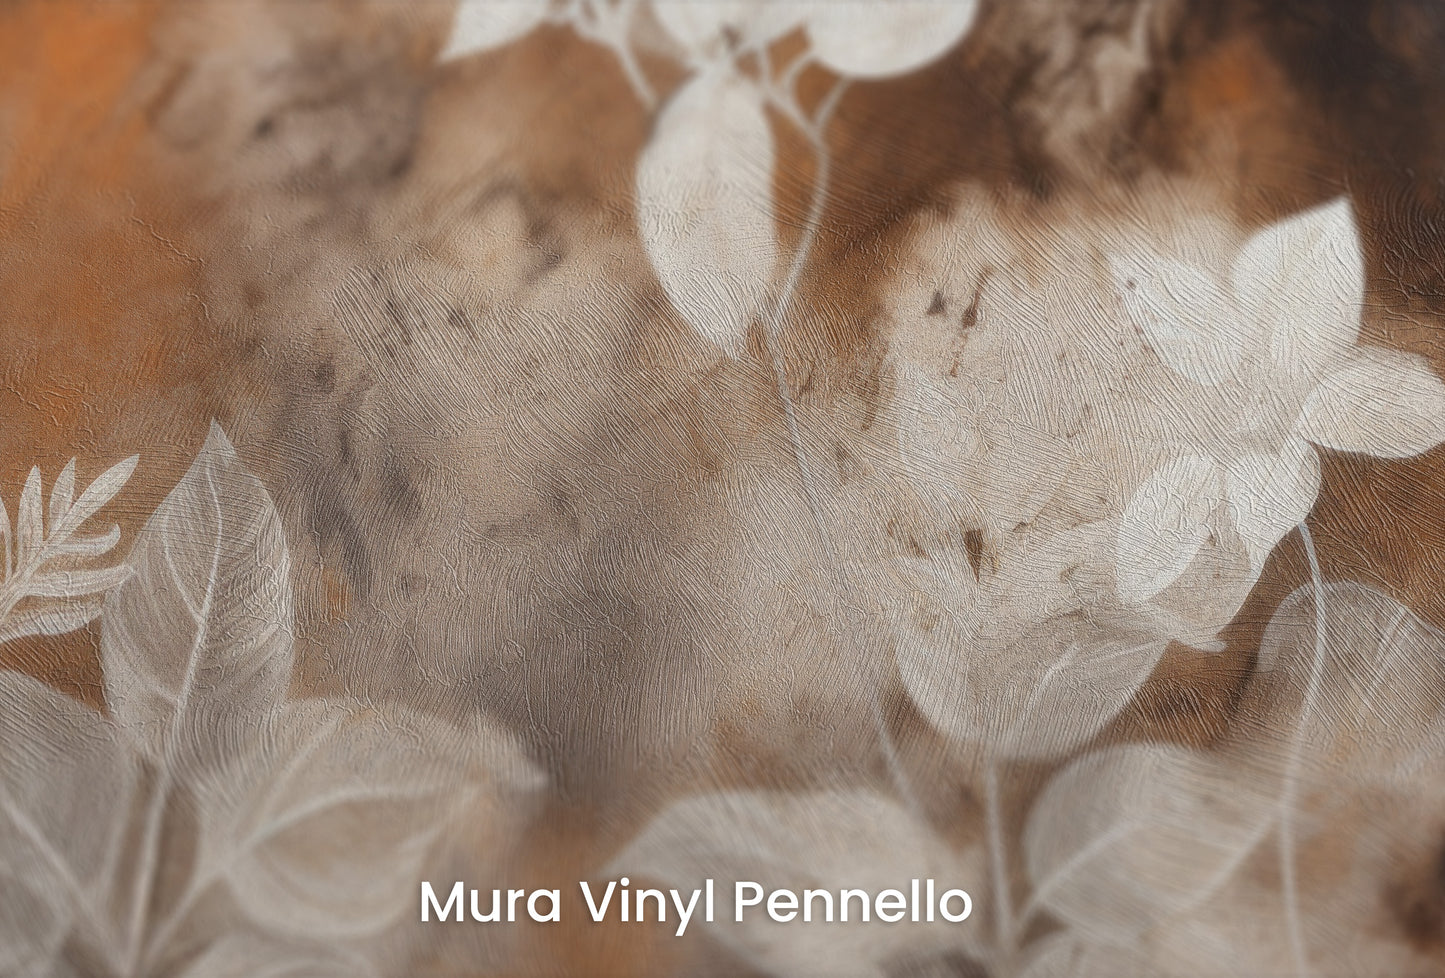 Zbliżenie na artystyczną fototapetę o nazwie Mystic Garden Silhouettes na podłożu Mura Vinyl Pennello - faktura pociągnięć pędzla malarskiego.